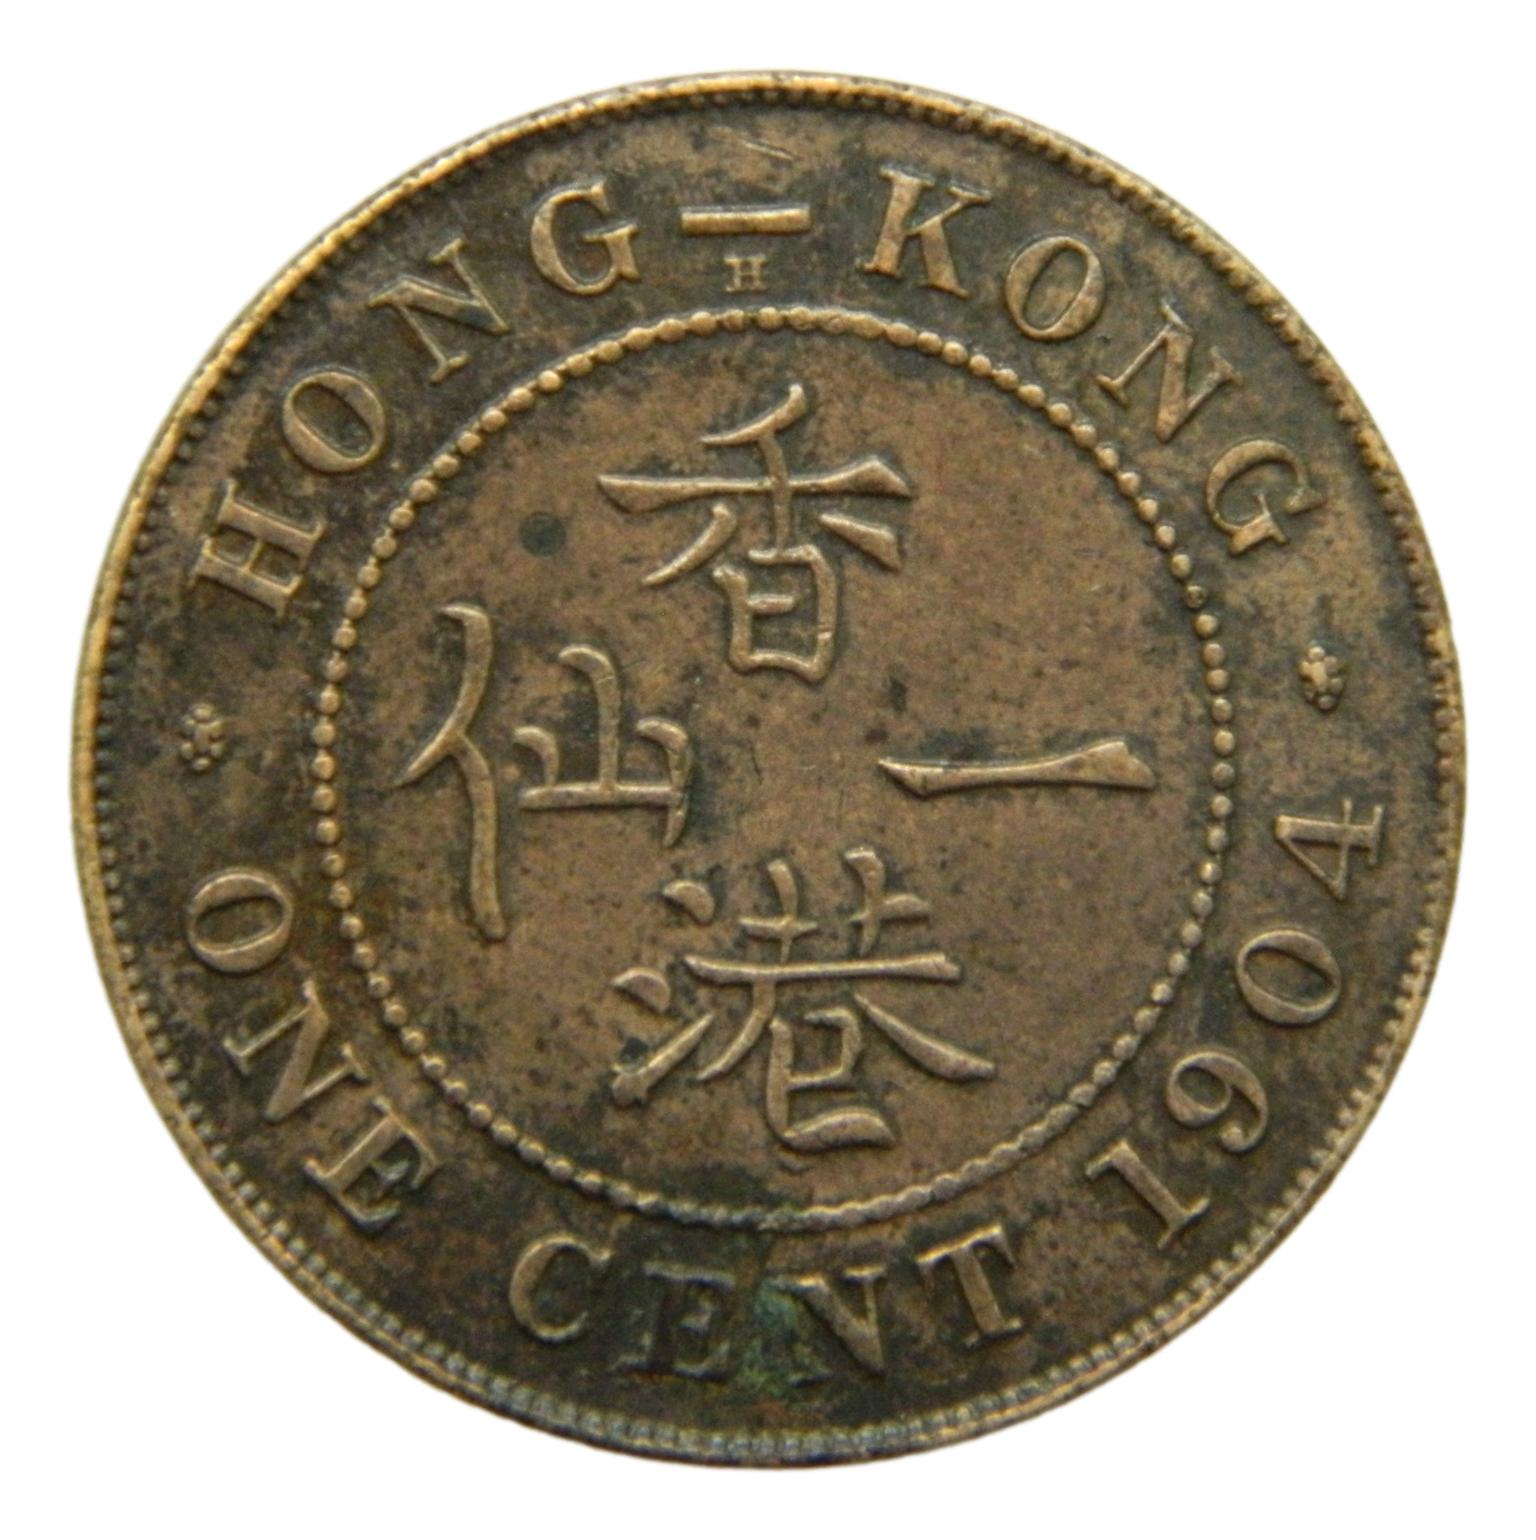 1904 - HONG KONG - CENT - EDWARD VII - S6